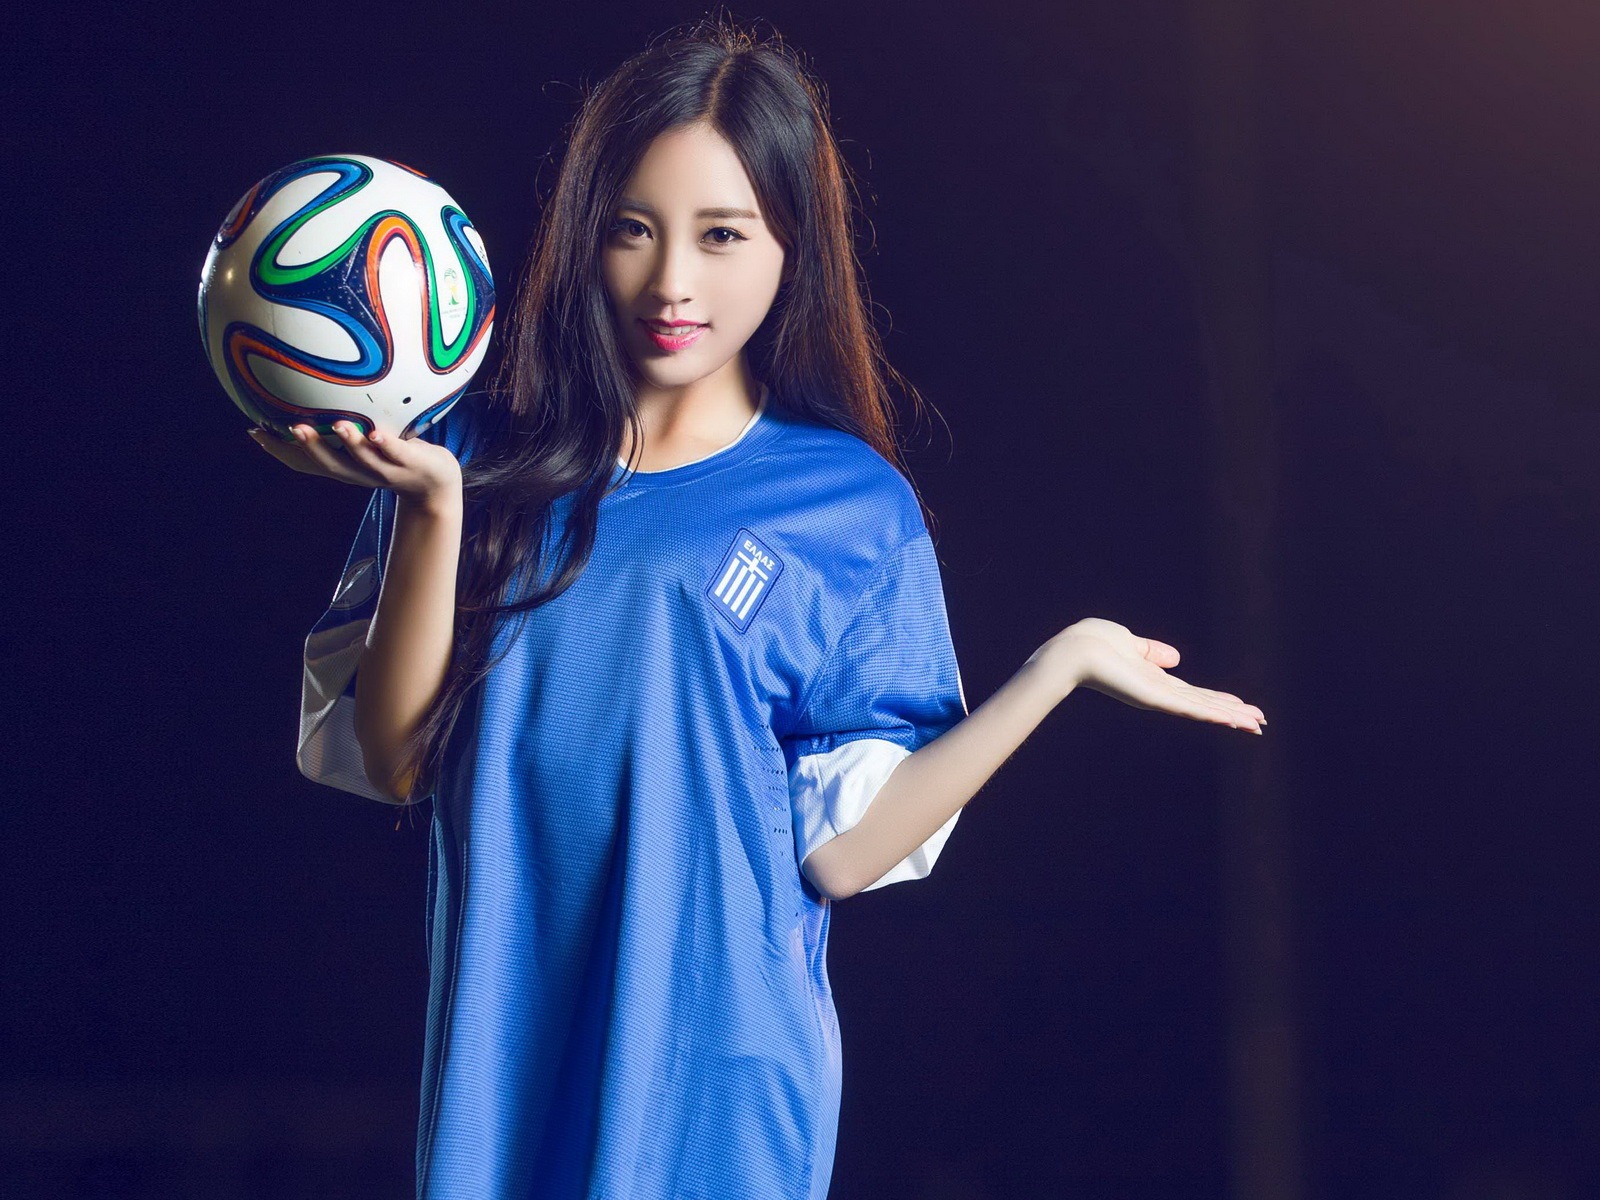 32 camisetas de la Copa del Mundo de fútbol, bebé wallpapers hermosas chicas HD #16 - 1600x1200